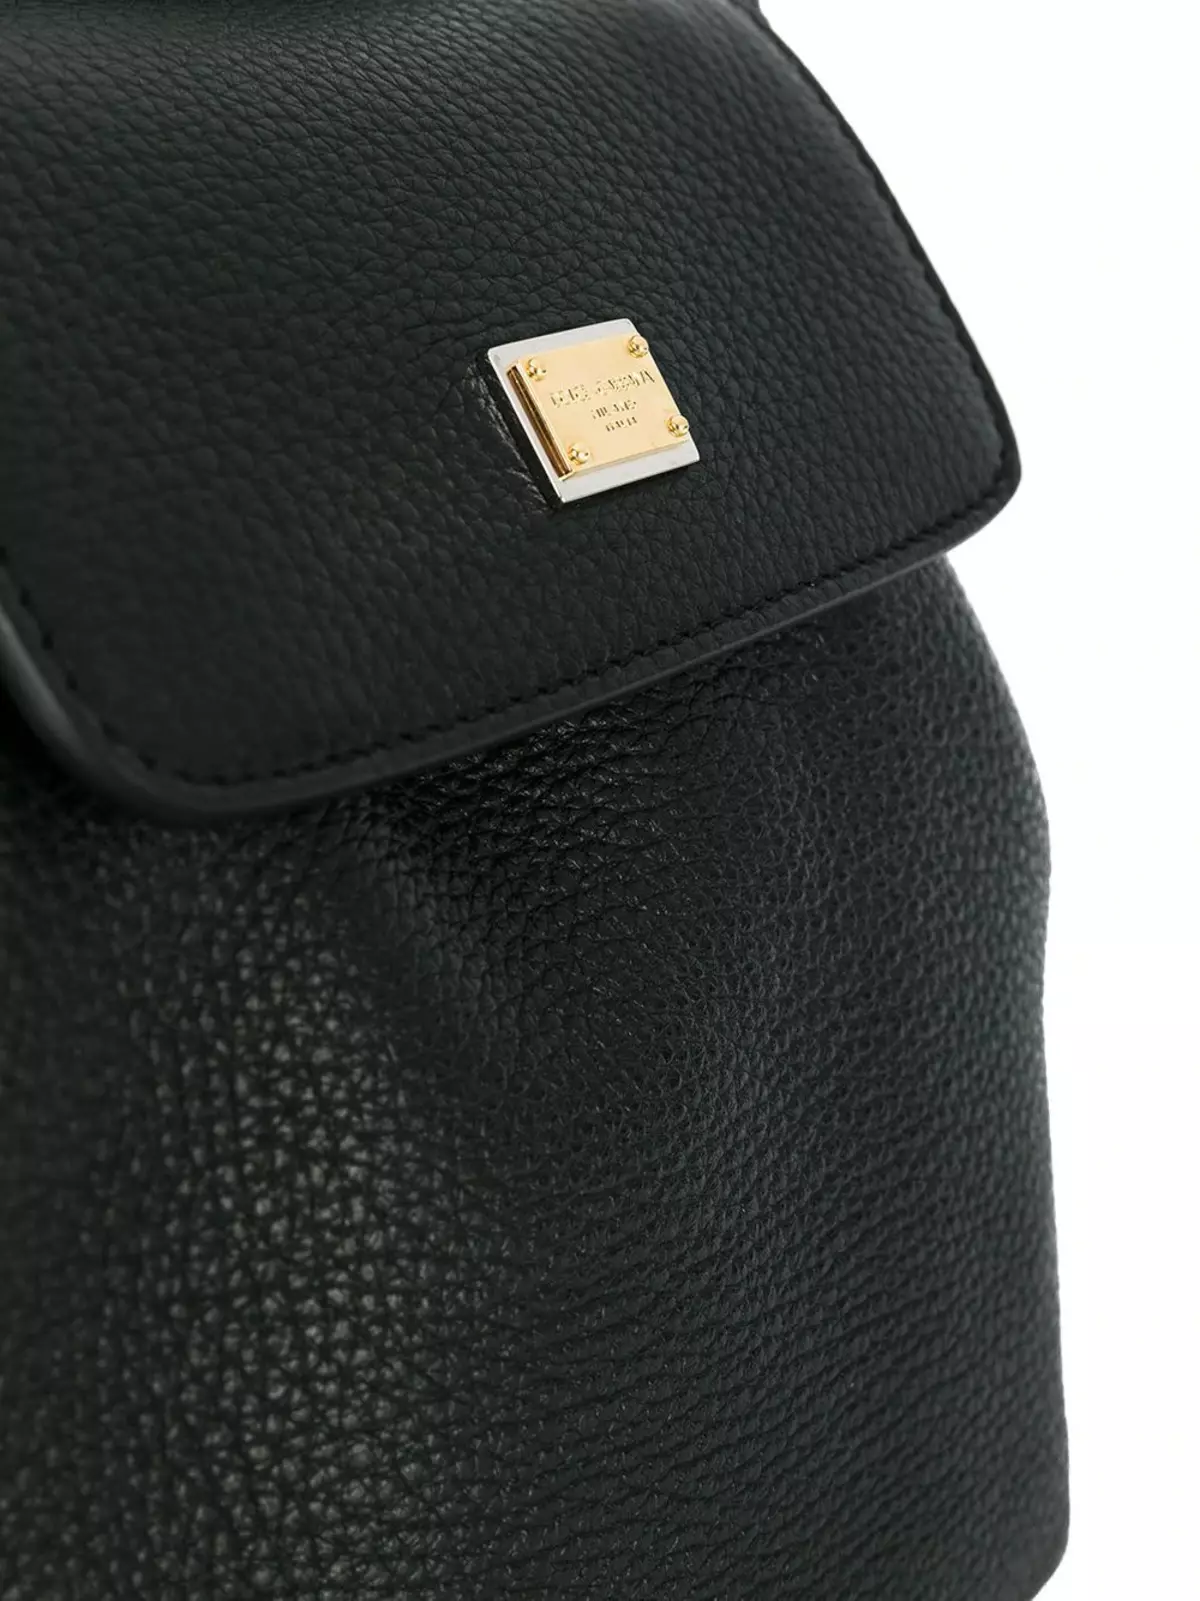 Dolce & Gabbana Plecaki: Kobiece i męskie, czarne i czerwone, skórzane plecaki torby i inne modele. Jak odróżnić oryginał z kopii? 2559_21